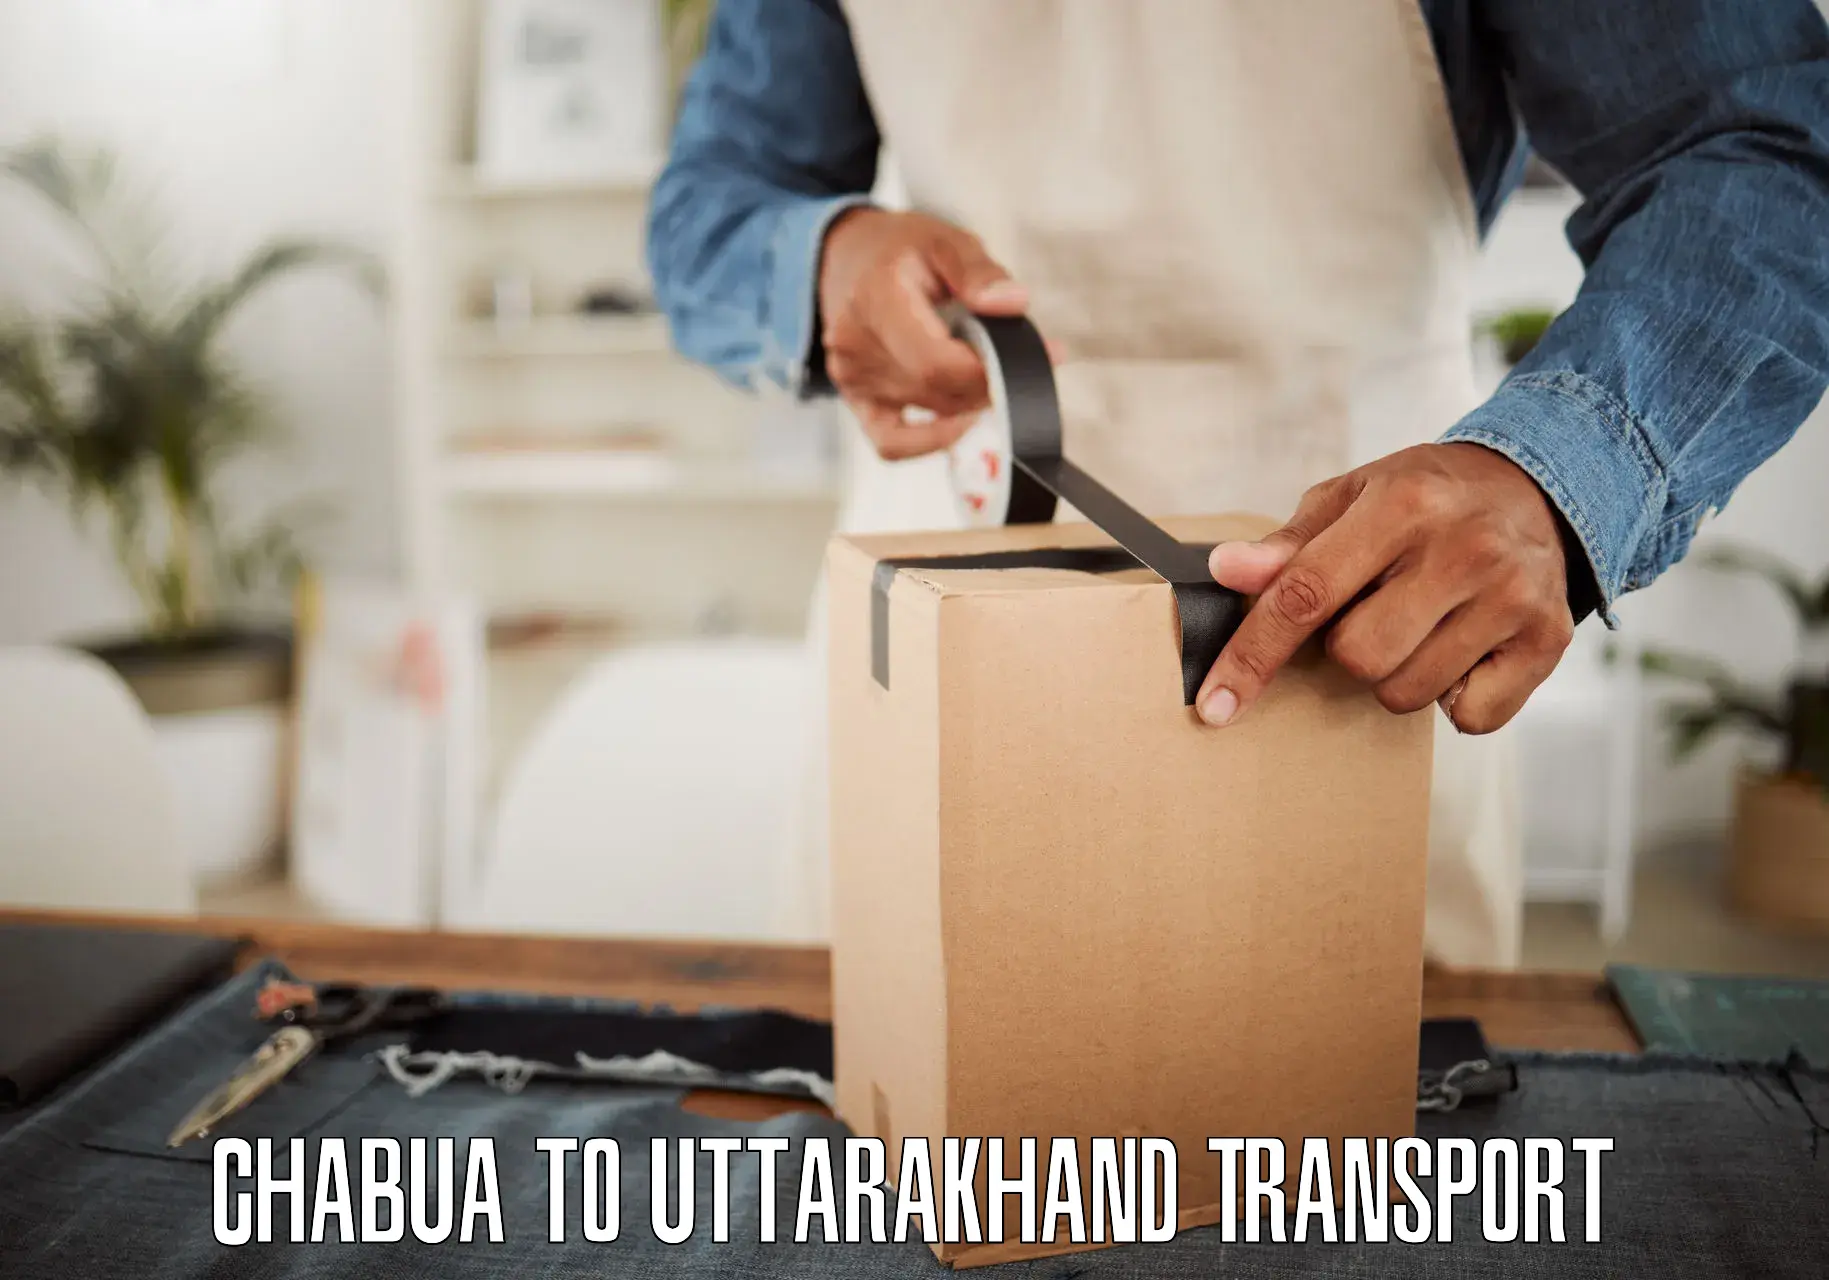 Nationwide transport services Chabua to Uttarakhand